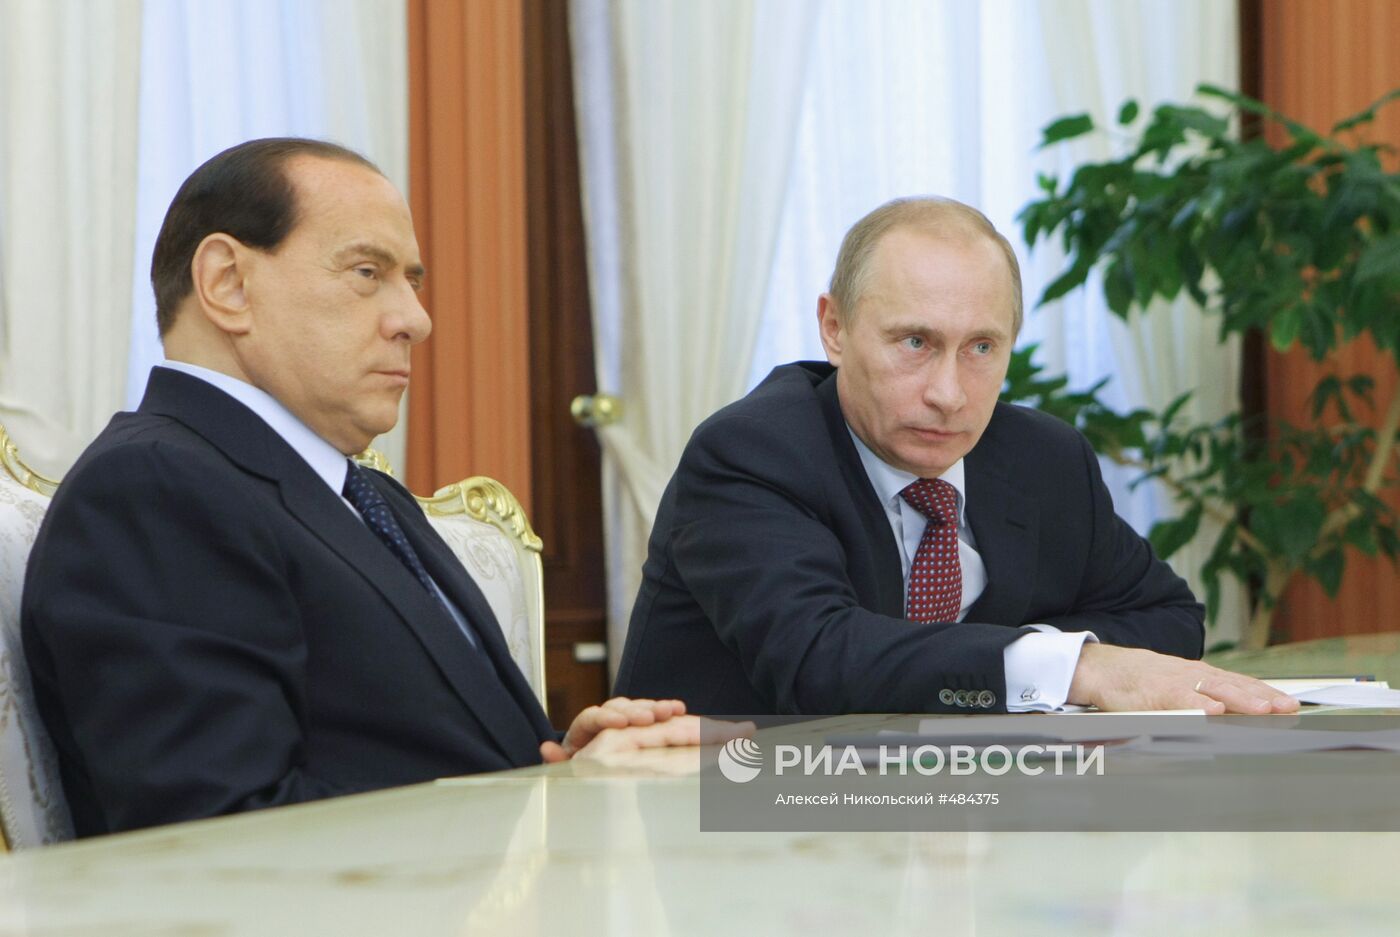 В.Путин и С.Берлускони встретились с главами российских компаний